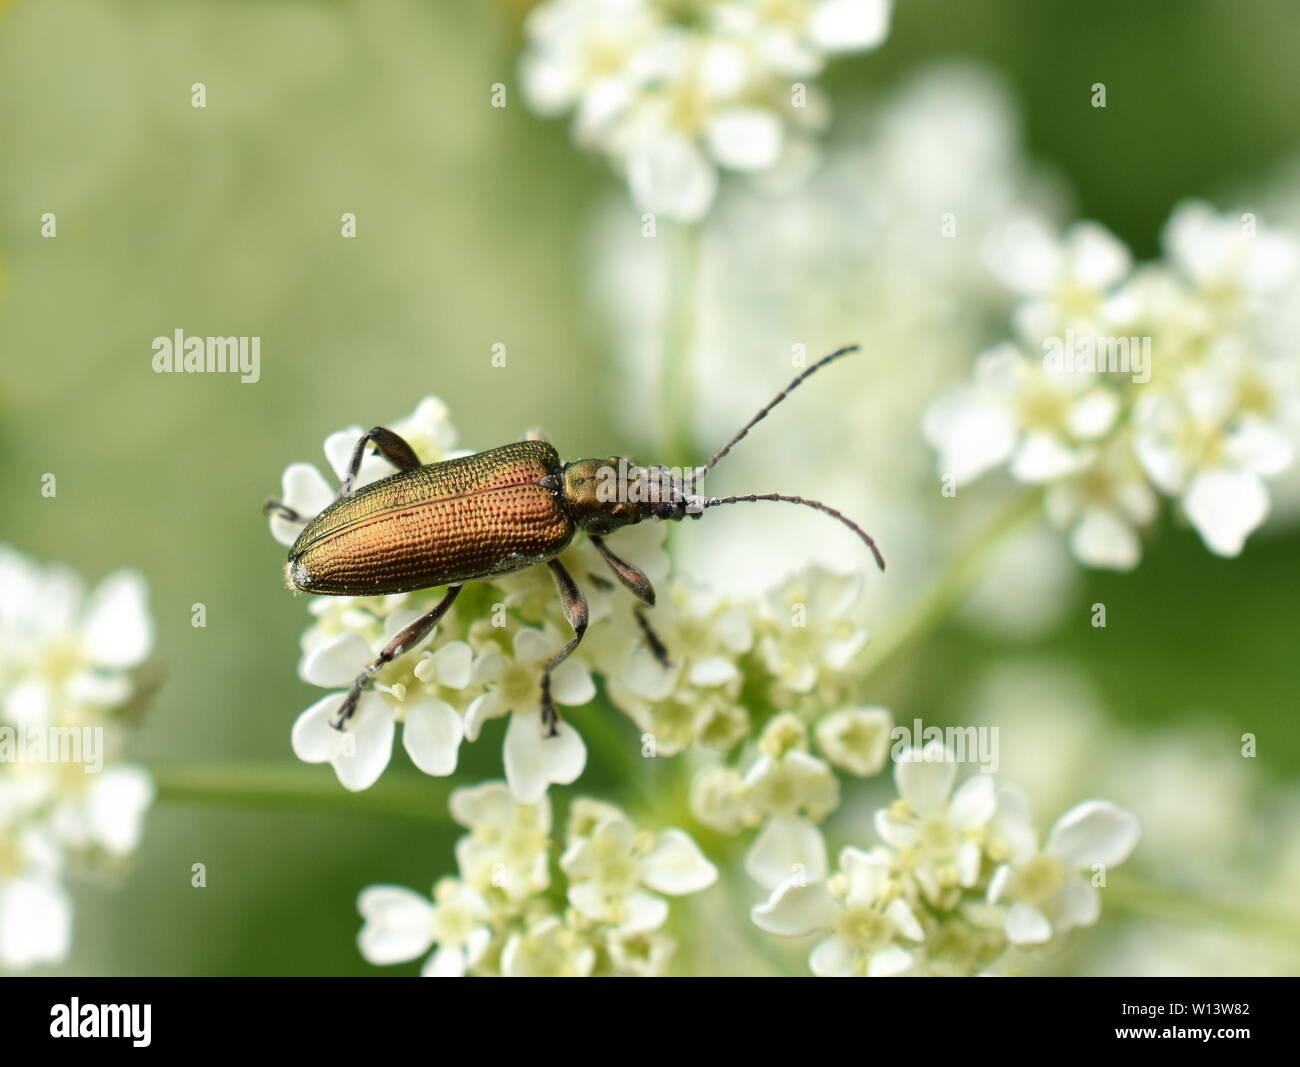 Donacia sp lucide foglie acquatiche beetle su un fiore Foto Stock